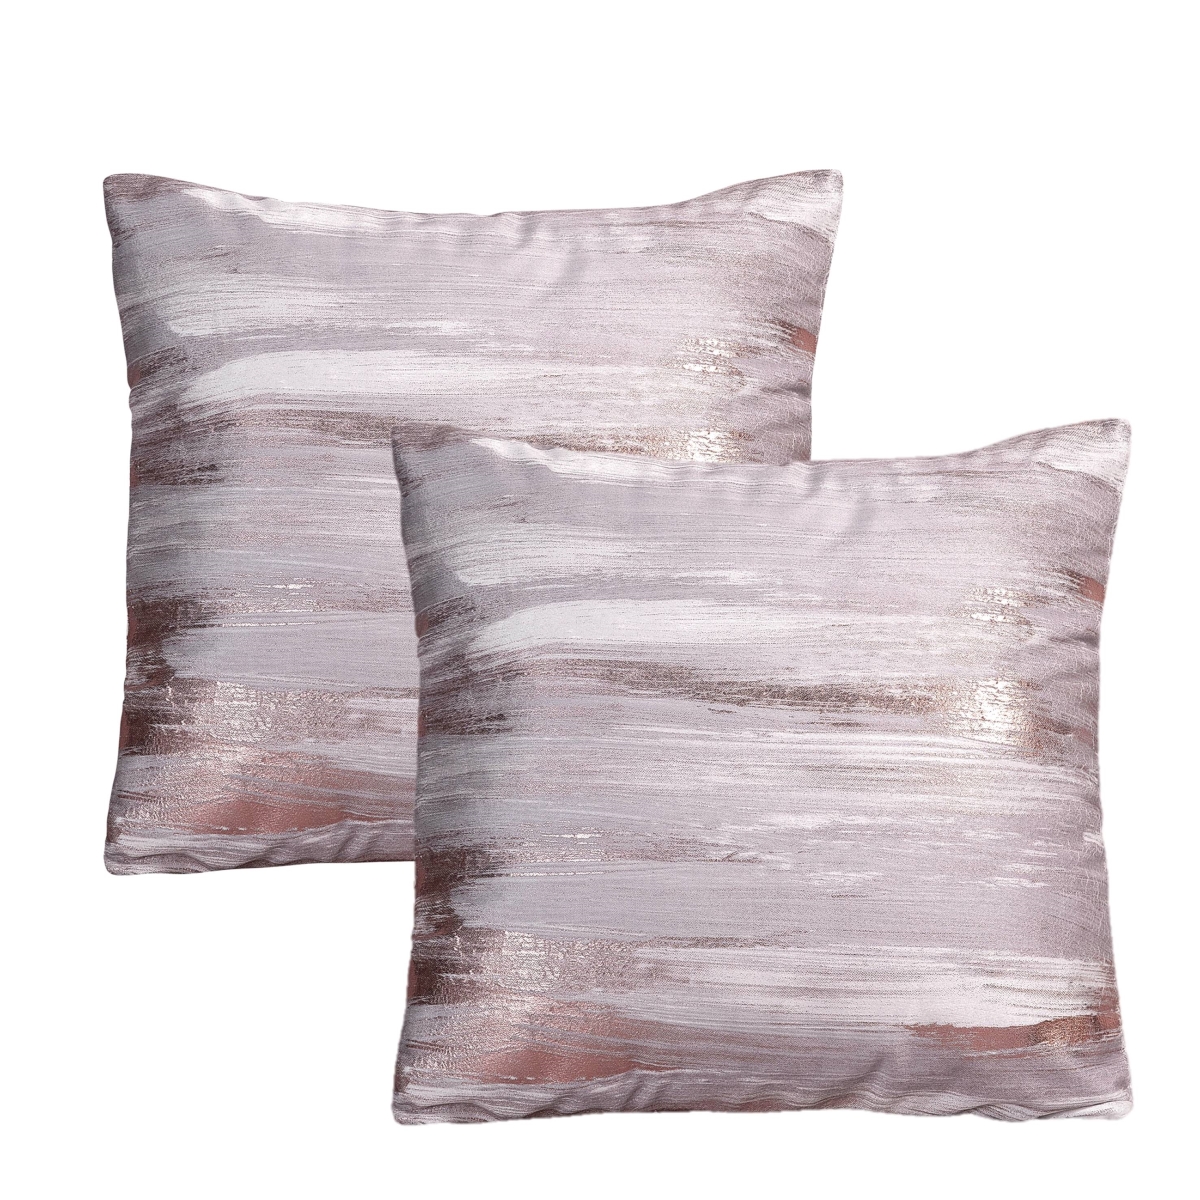 Itv-181-ros Velvet Foil Print Pillow Cover, Rose - Set Of 2